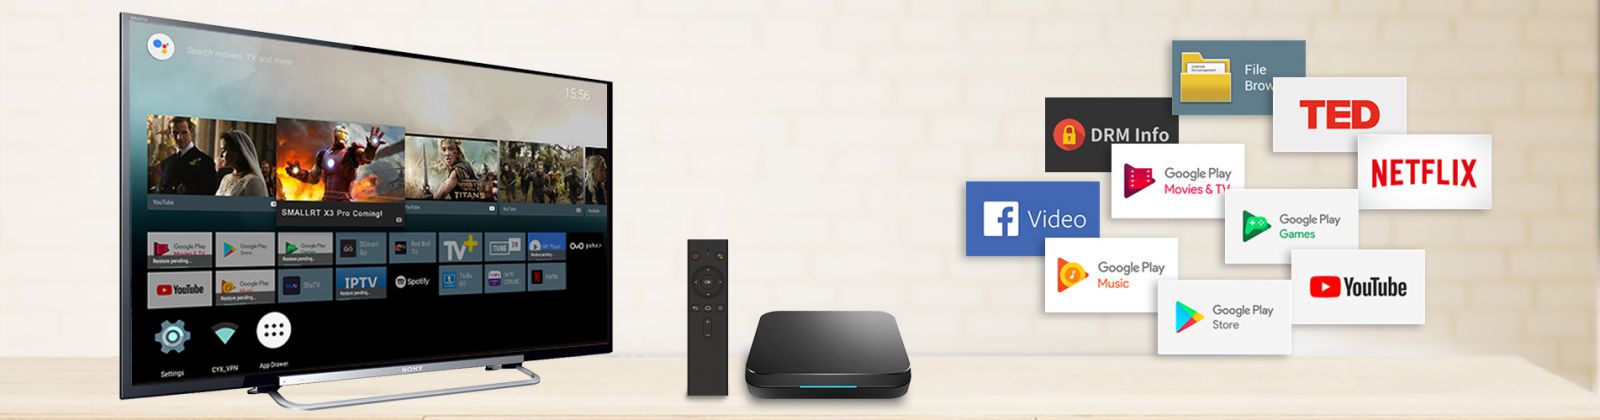 Mua Android TV Box Giá Rẻ TPHCM